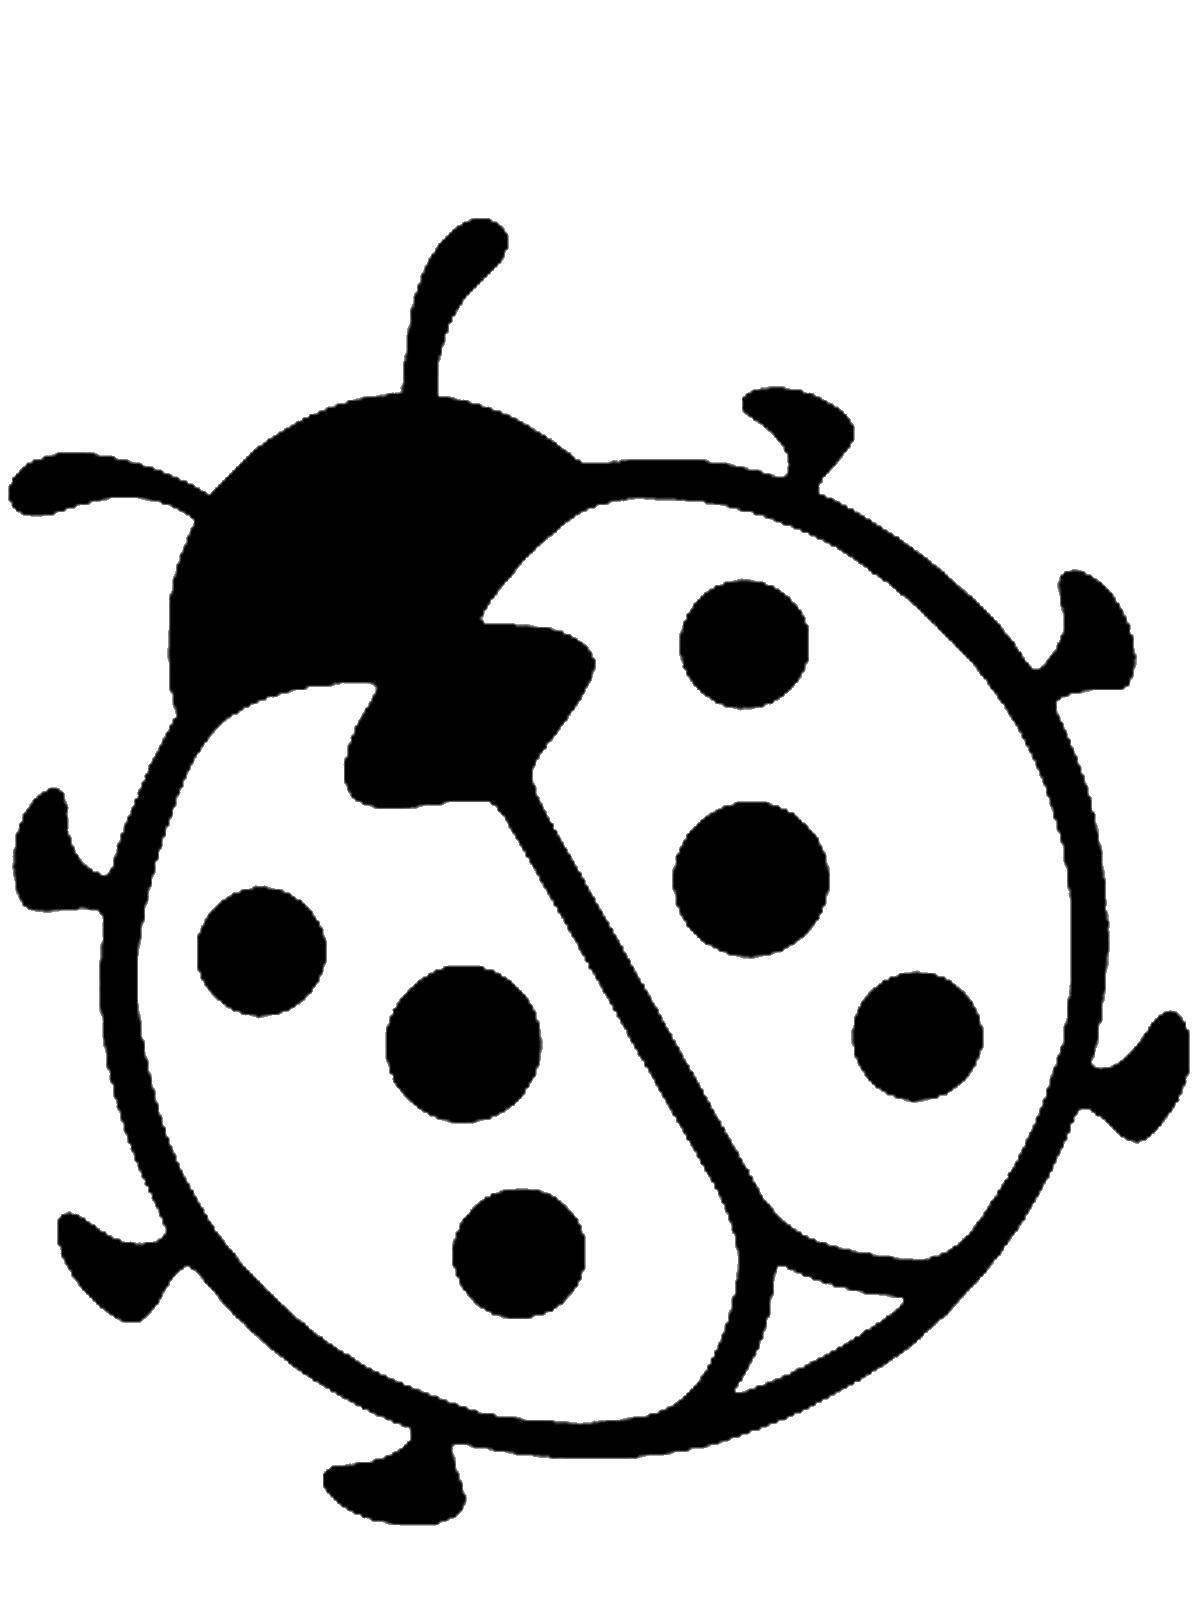 Joyful ladybug coloring for kids